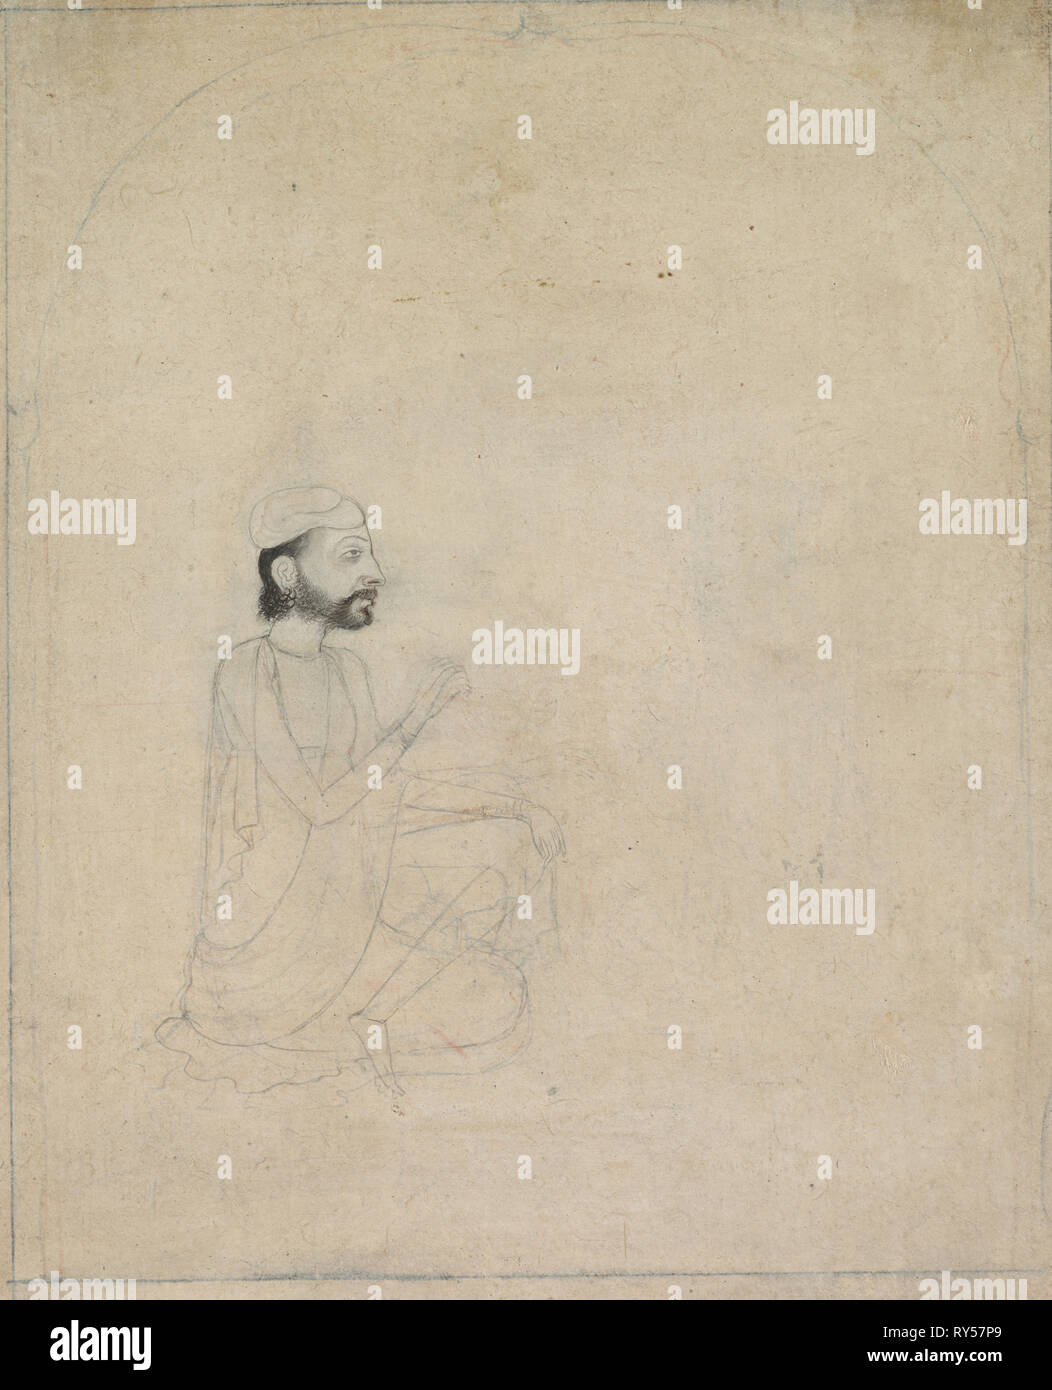 Ritratto di un uomo seduto, c. 1830-1850. India, Sikh, xix secolo. Inchiostro su carta; complessivo: 18,4 x 14,6 cm (7 1/4 x 5 3/4 in Foto Stock